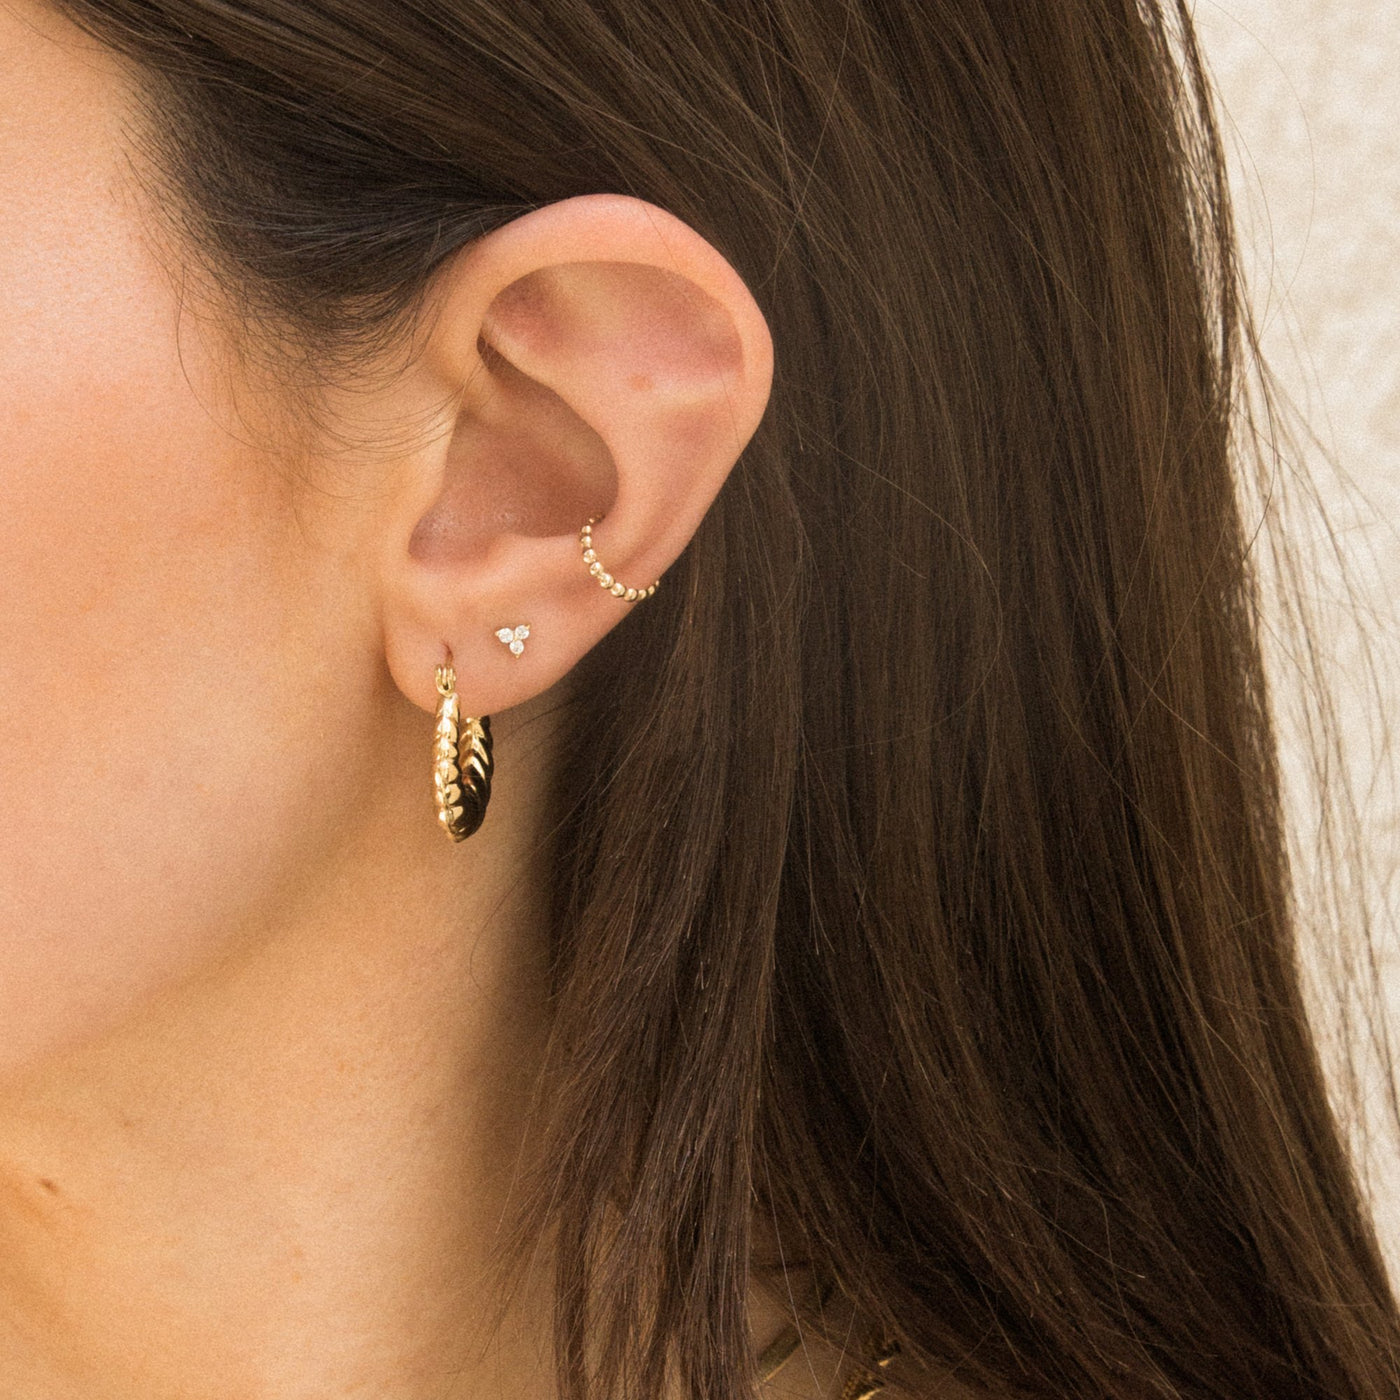 Beaded Ear Cuff by Simple & Dainty Jewelry